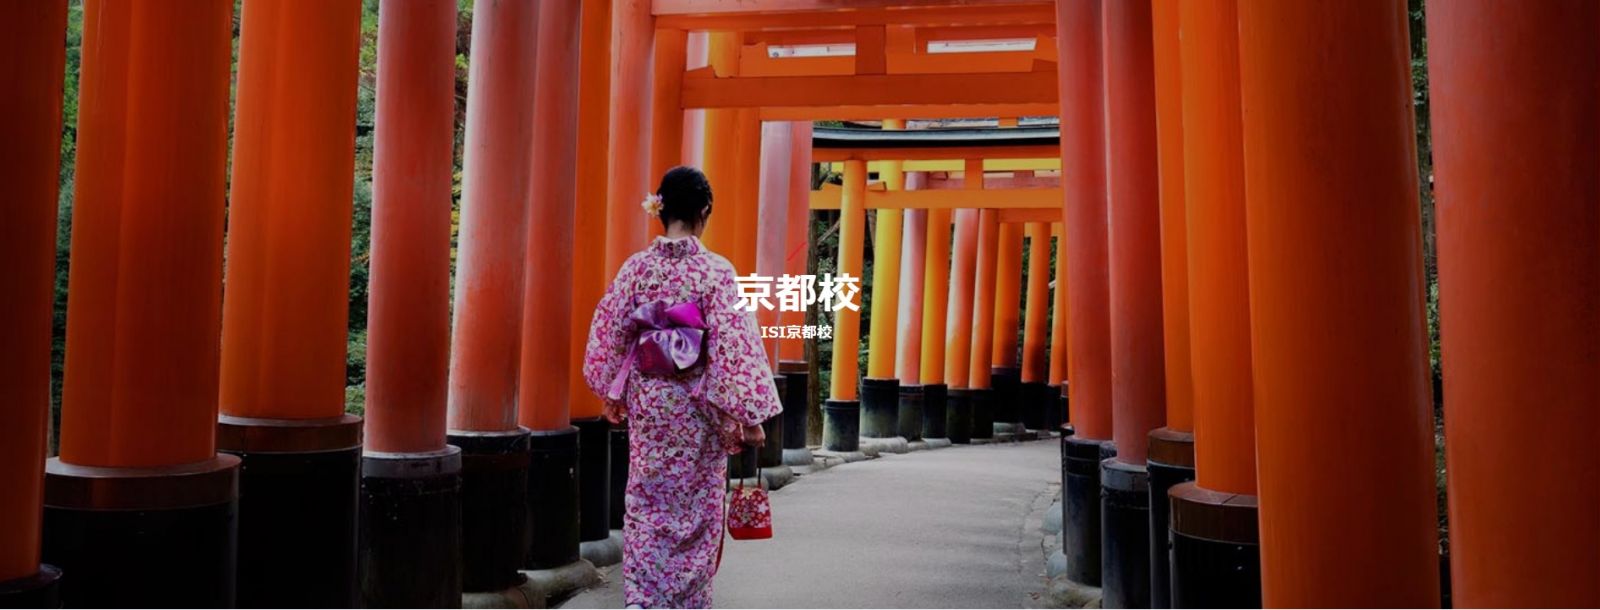 日本留學FAQ -- 日本留學常問問題